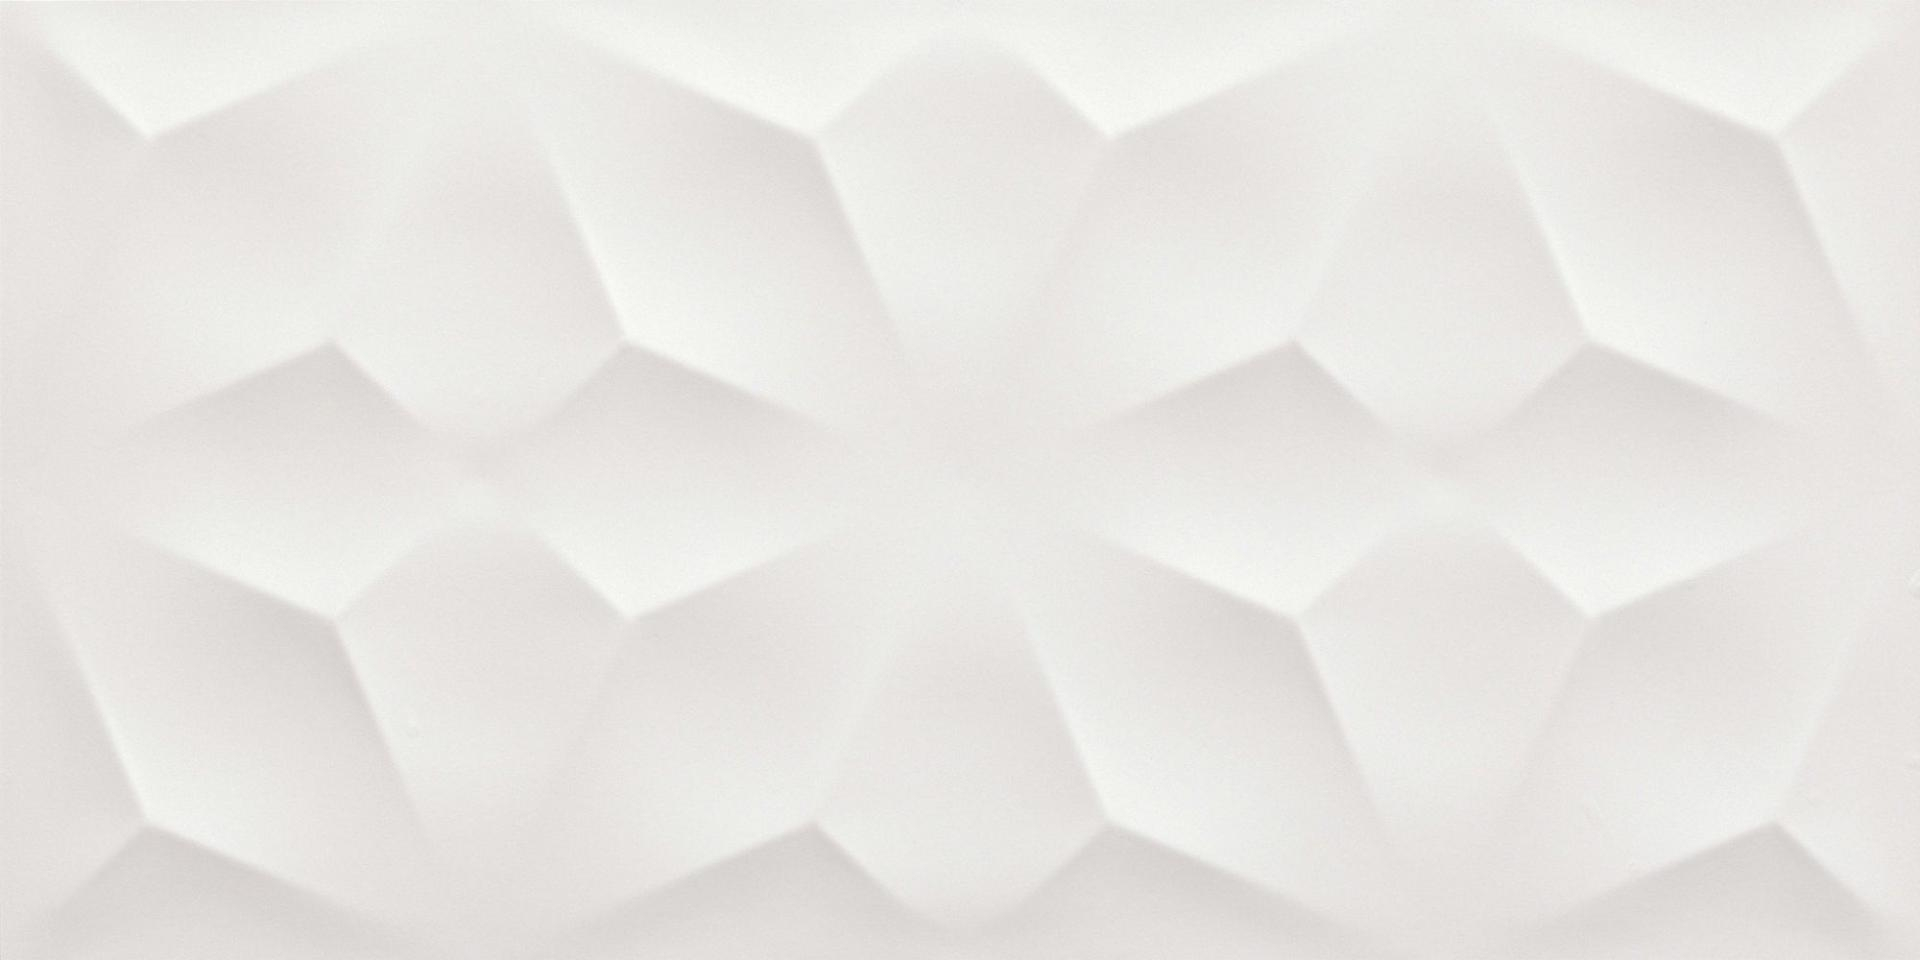 faience-atlas-3dwall-diamond-mat-40x80r-1-28m2-pq-white-8ddi-0